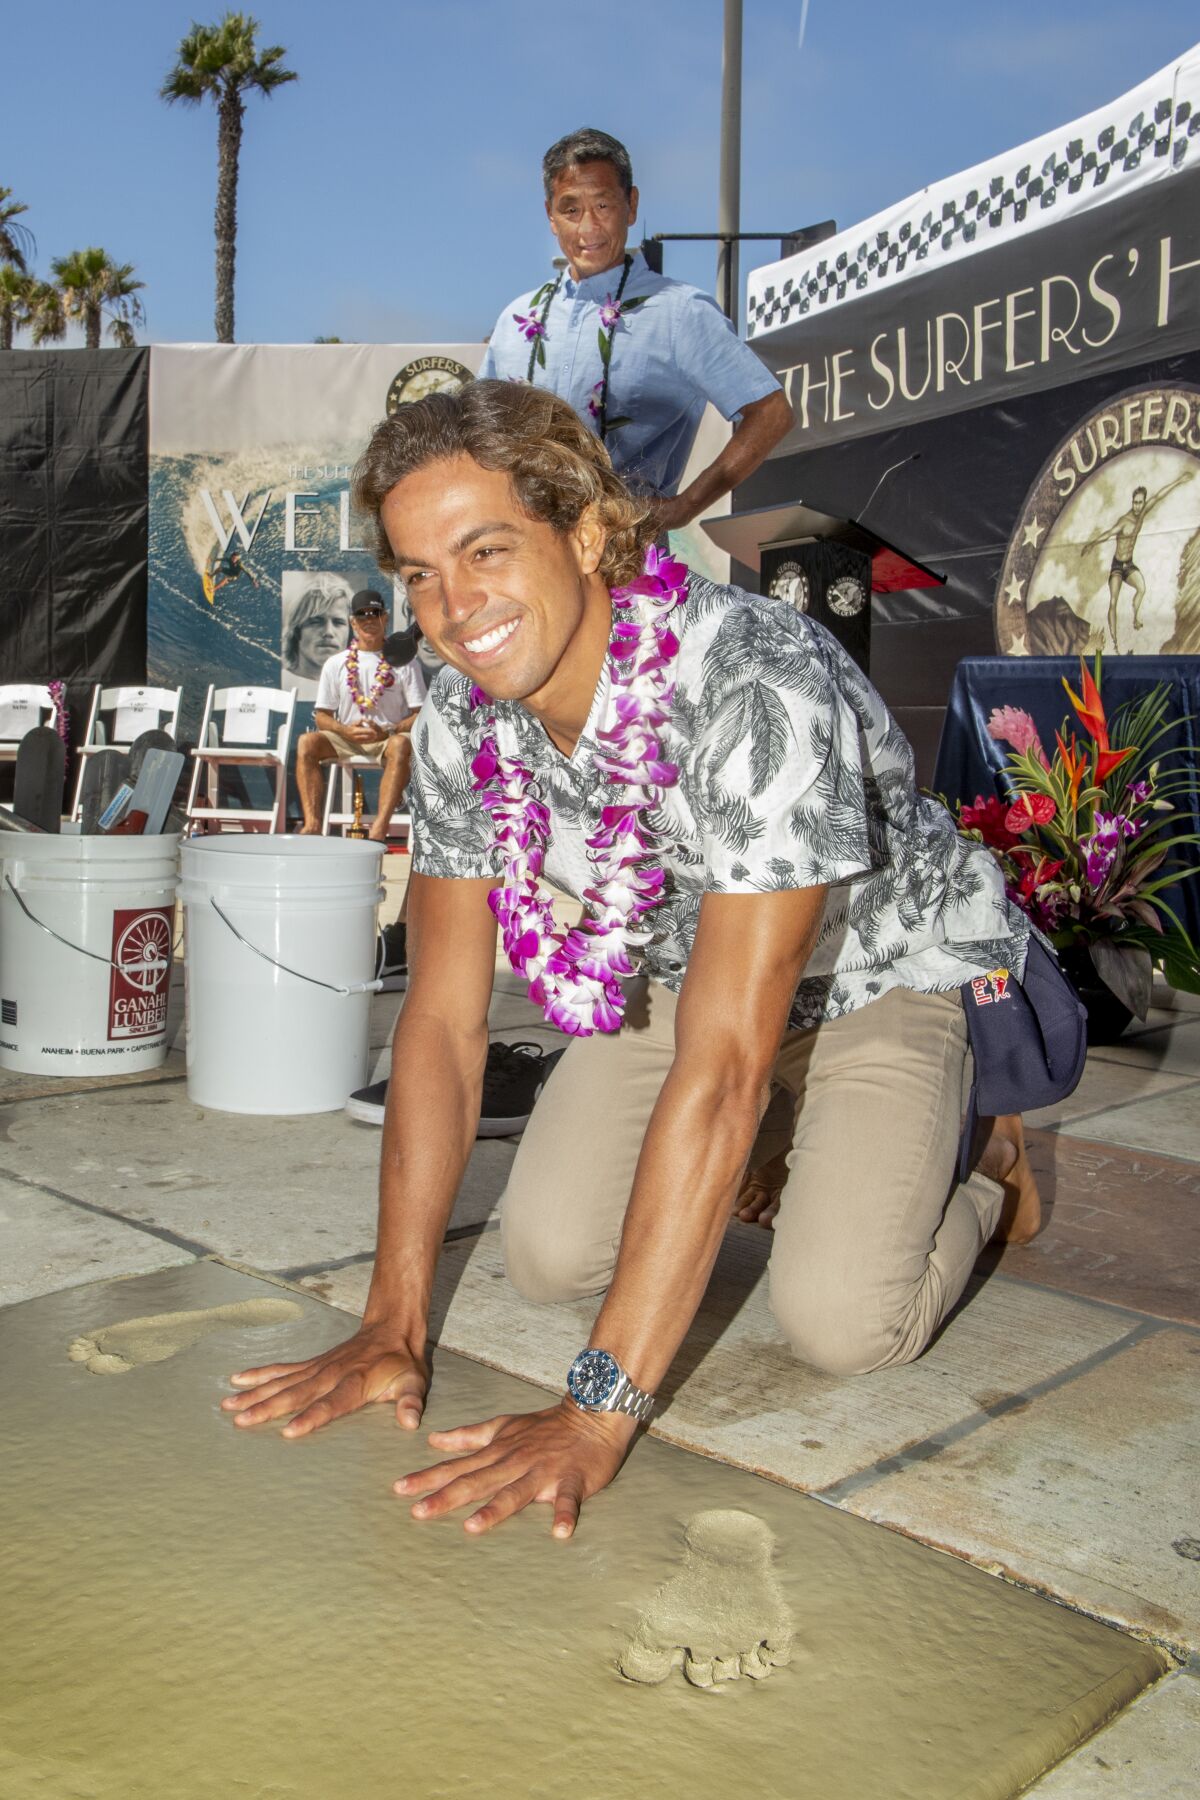 Kai Lenny, Surfers' Hall of Fame'e girişi sırasında el izlerini ıslak betona yerleştiriyor.